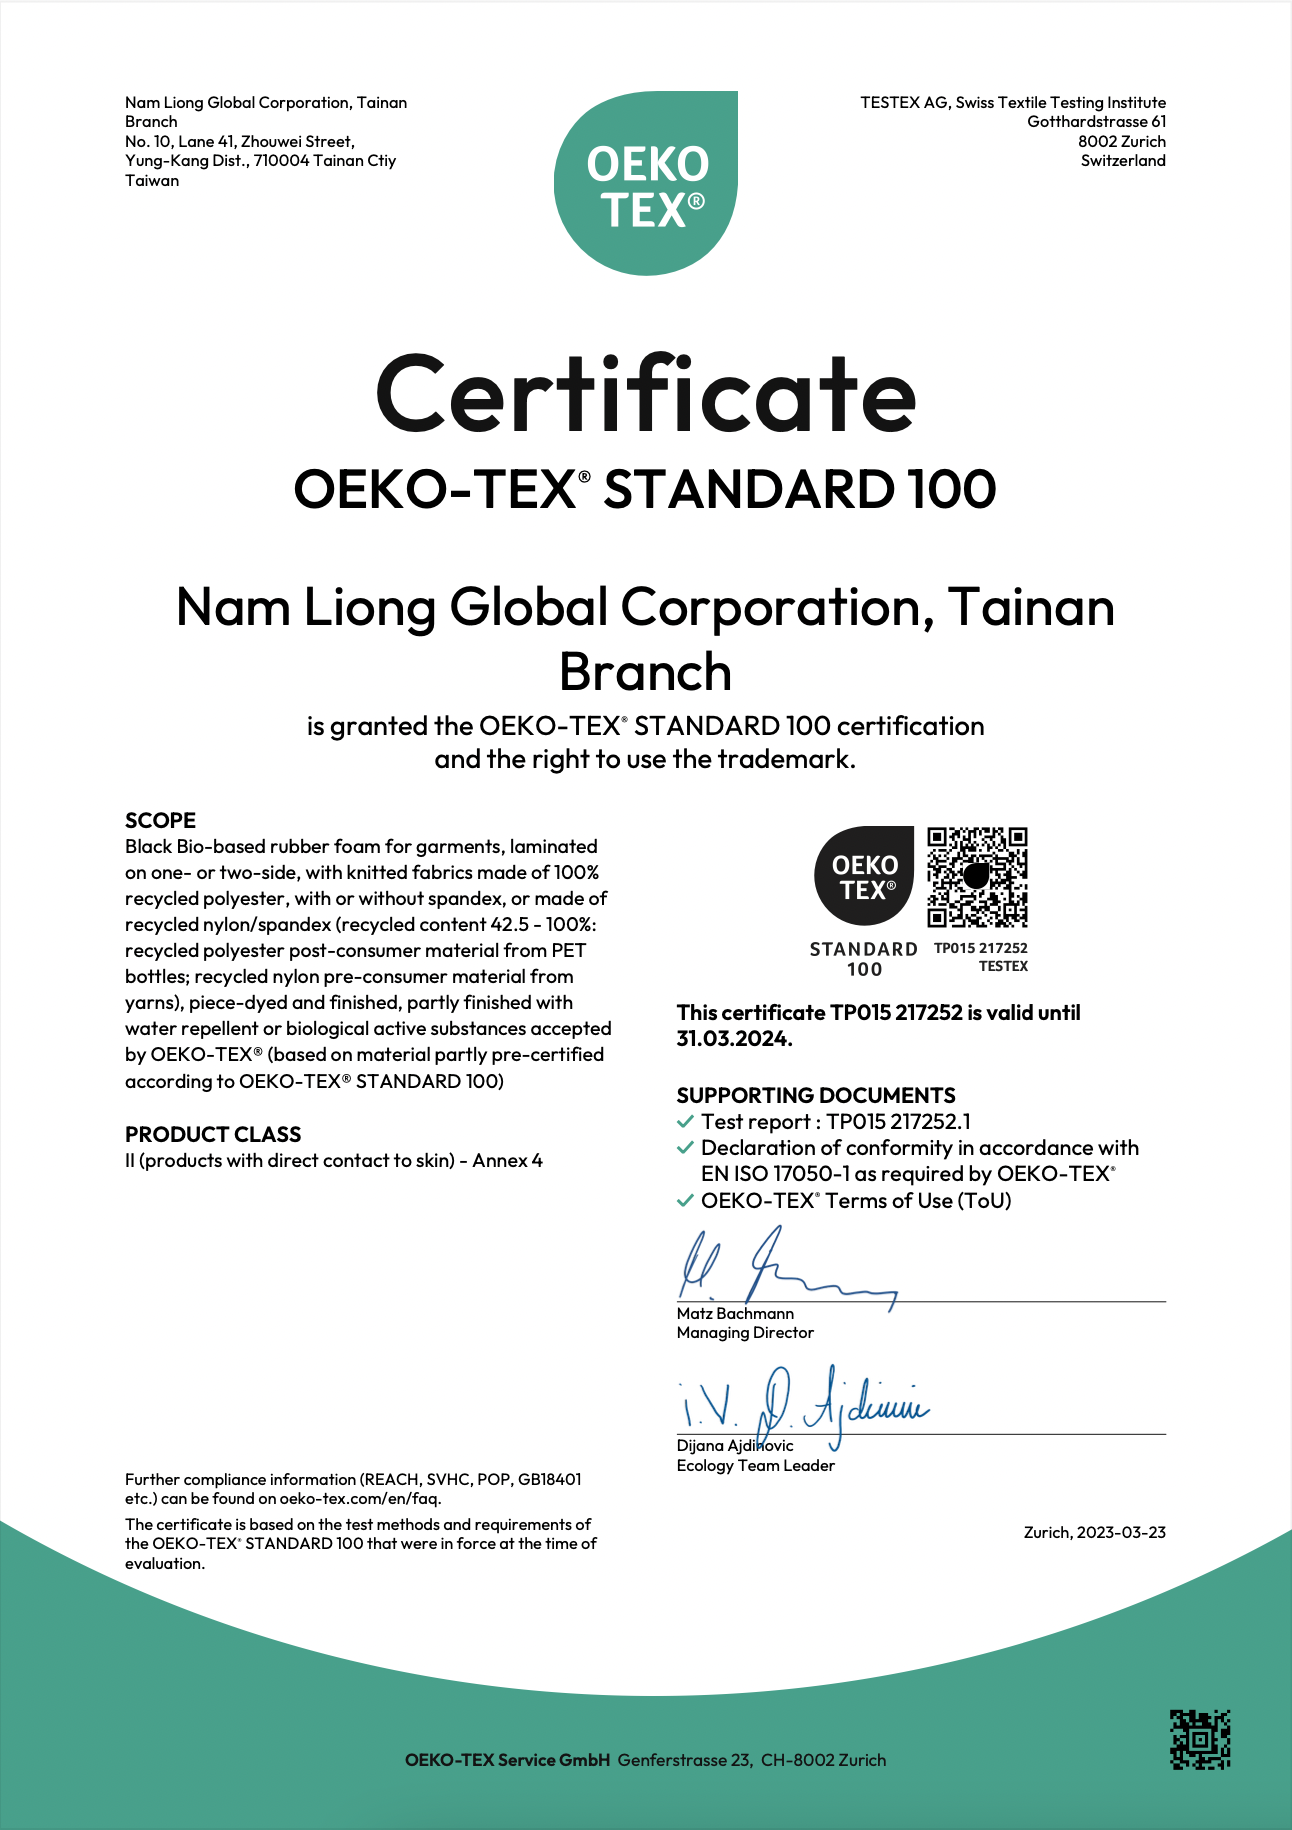 עם תעודת Oeko-Tex Standard 100®